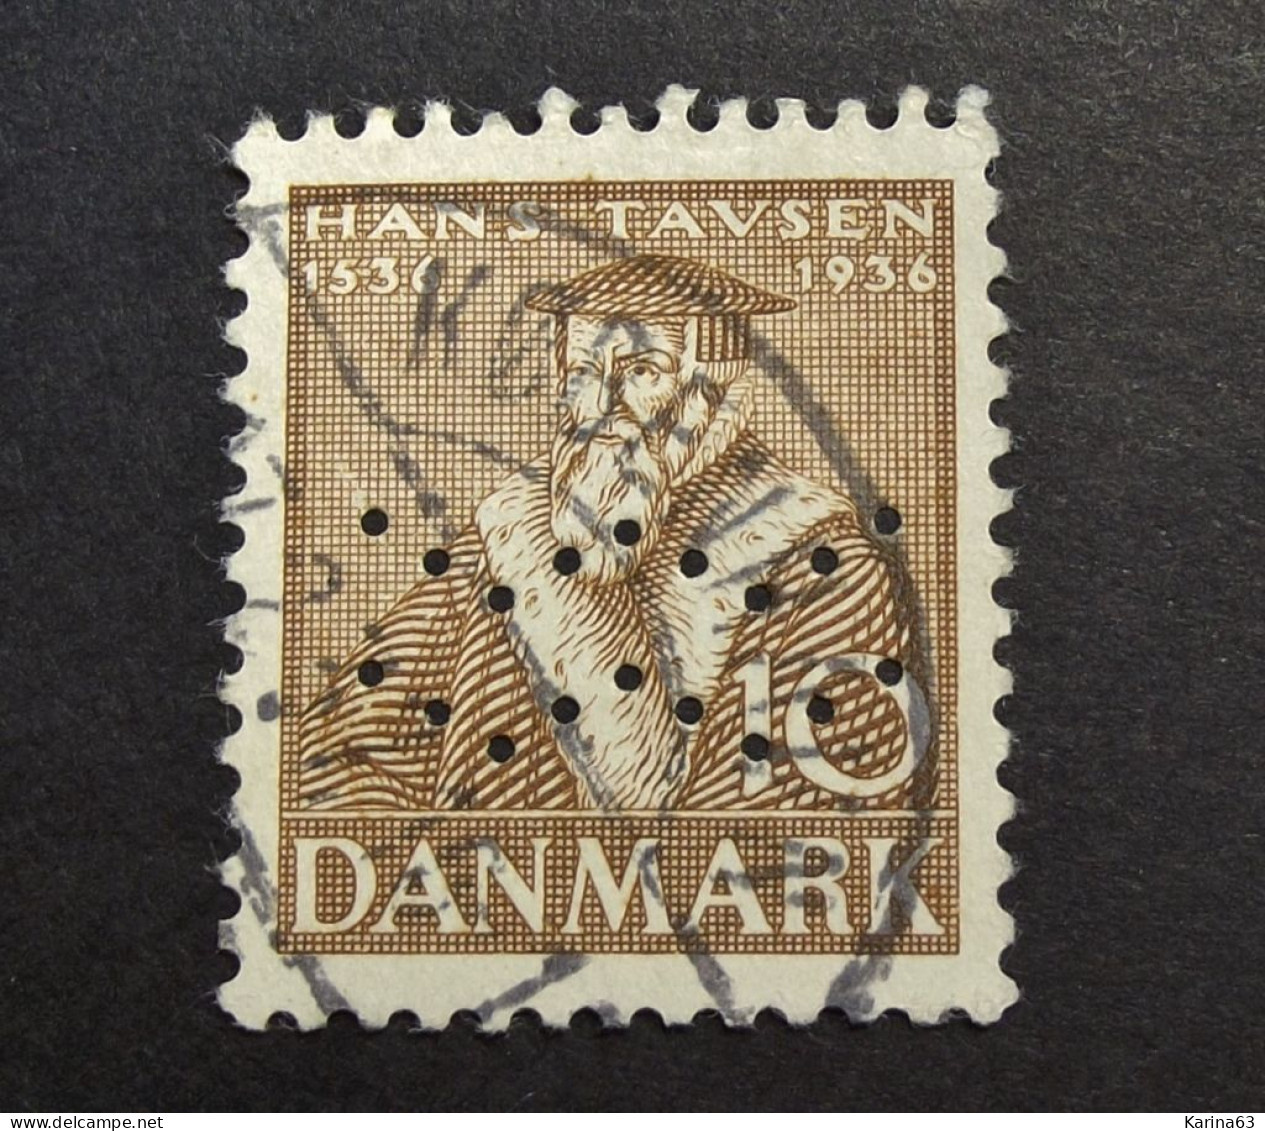 Denmark - Danemark 1936 - ( Hans Tavsen 10c ) Perfin - Lochung - Waves -  Kobenhavns Kommune - Cancelled - Gebraucht